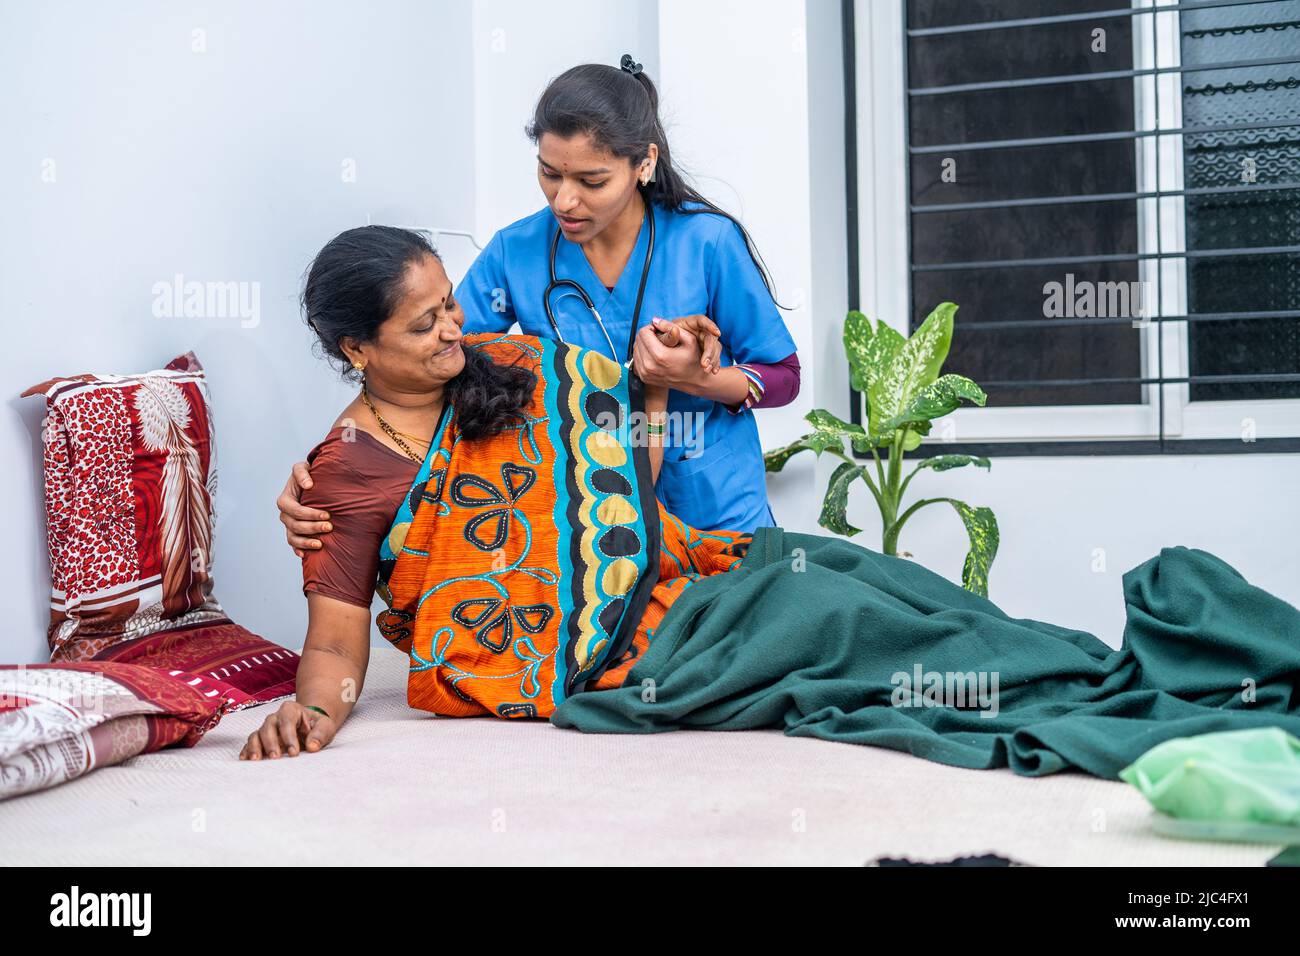 Krankenschwester, die kranken älteren Frauen hilft, während der Tagesbetreuung vom Bett aufzustehen - Konzept des beruflichen Berufs, häuslicher Gesundheitsversorgung oder medizinischen Dienstes Stockfoto